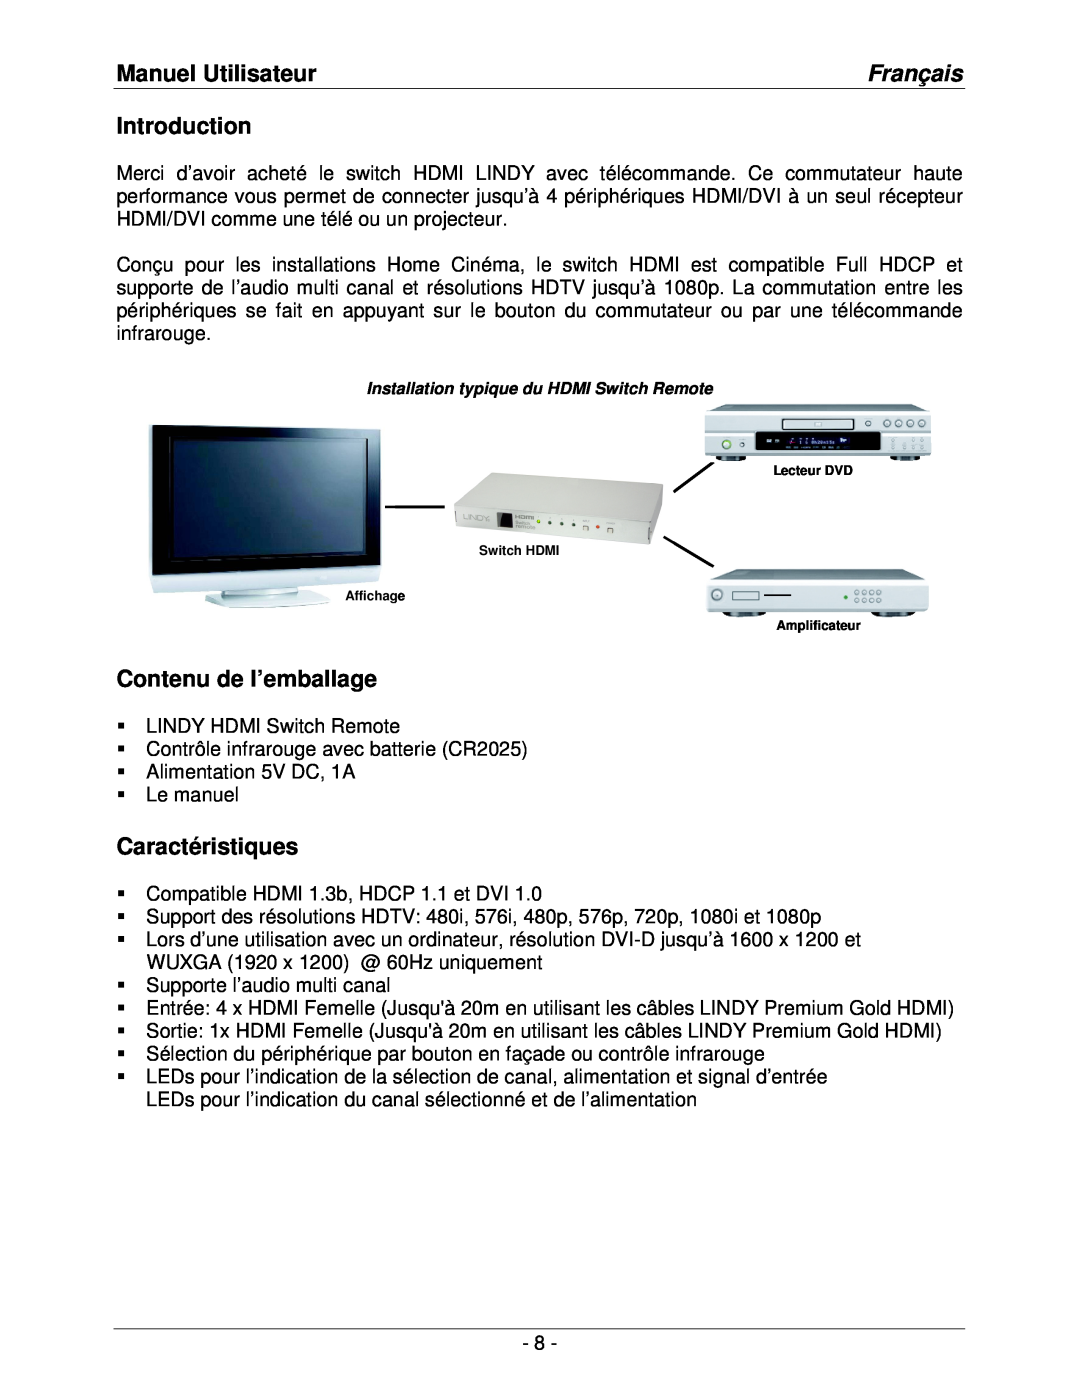 Lindy lindy no. 32594 user manual Manuel Utilisateur, Français, Contenu de l’emballage, Caractéristiques, Introduction 